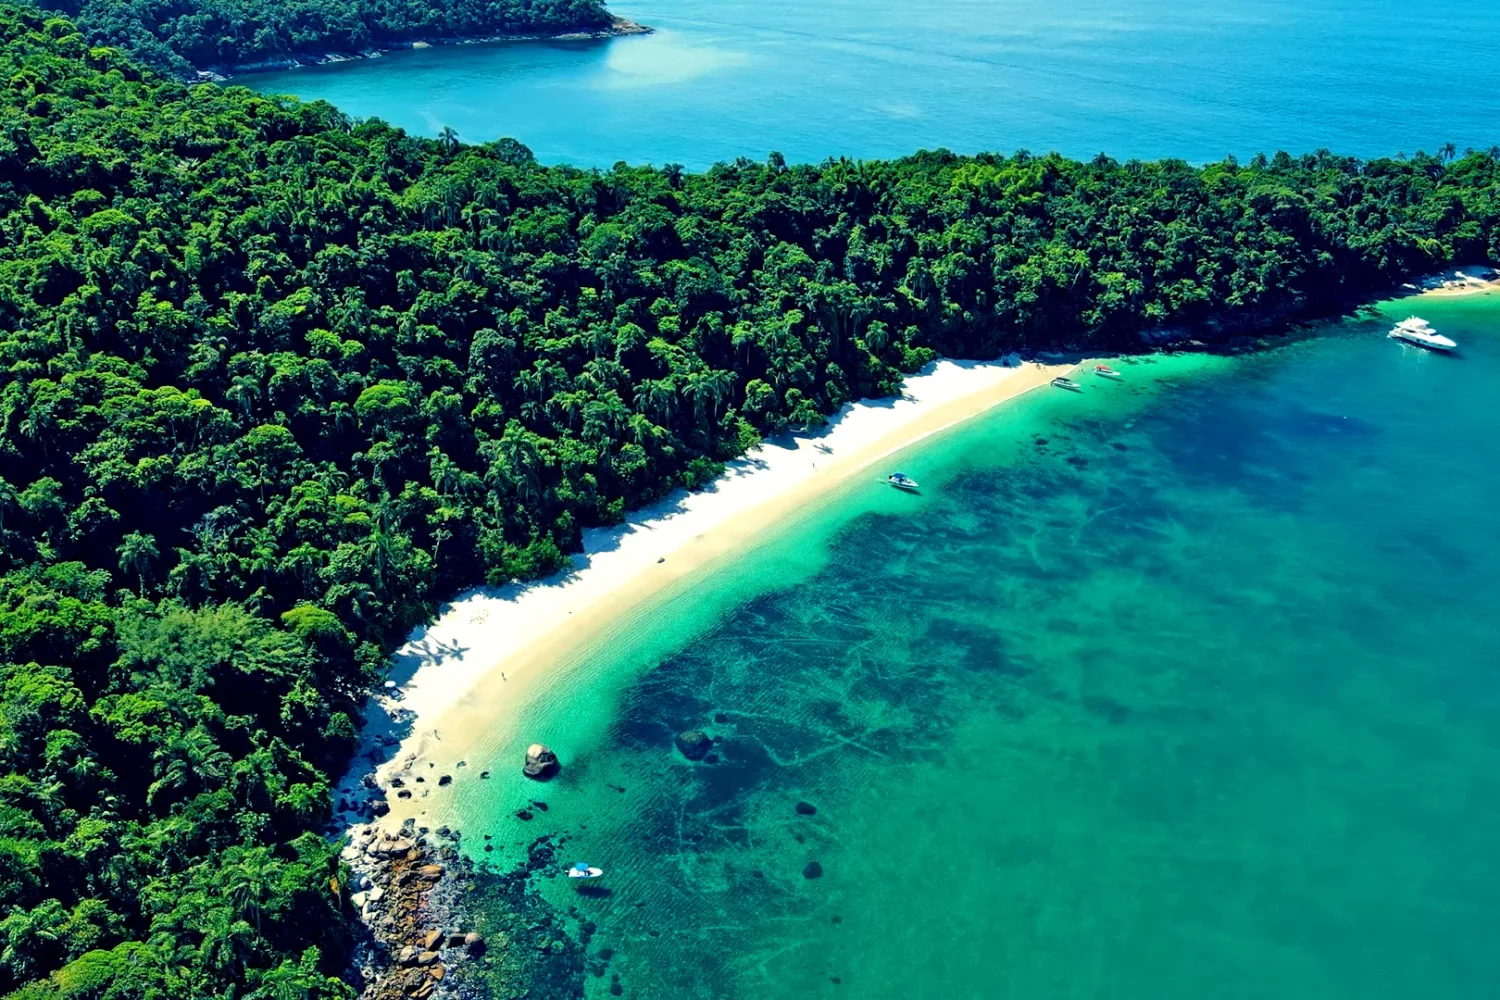 Visão aérea em perspectiva, mais aproximada, da Praia de Jurubaíba em Angra dos Reis/RJ, mais conhecida como Praia do Dentista. O verde da vegetação exuberante abraça a faixa de areias brancas, combinando com o verde cristalino do mar.